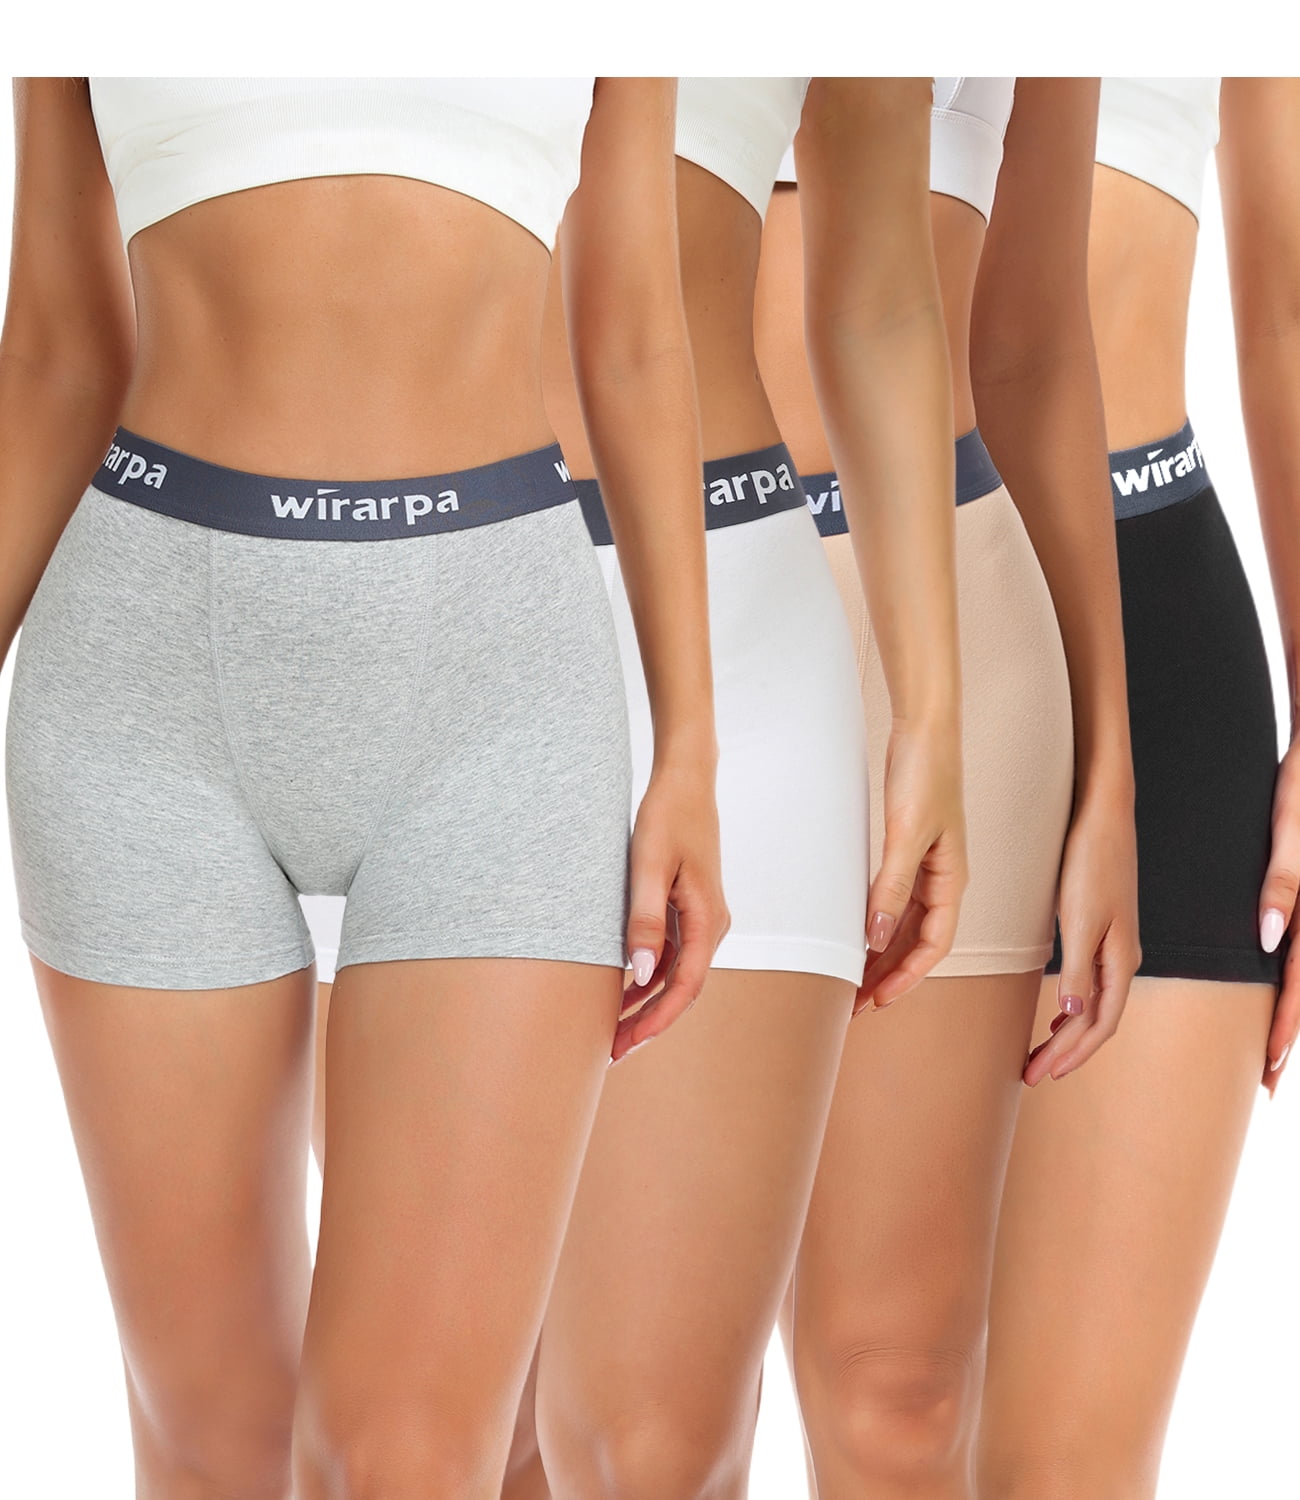 Wirarpa Women's Underwear High Waisted Full Coverage Cotton Briefs 4 Pack( 2XL, Black/White/Heather Grey/Beige) 